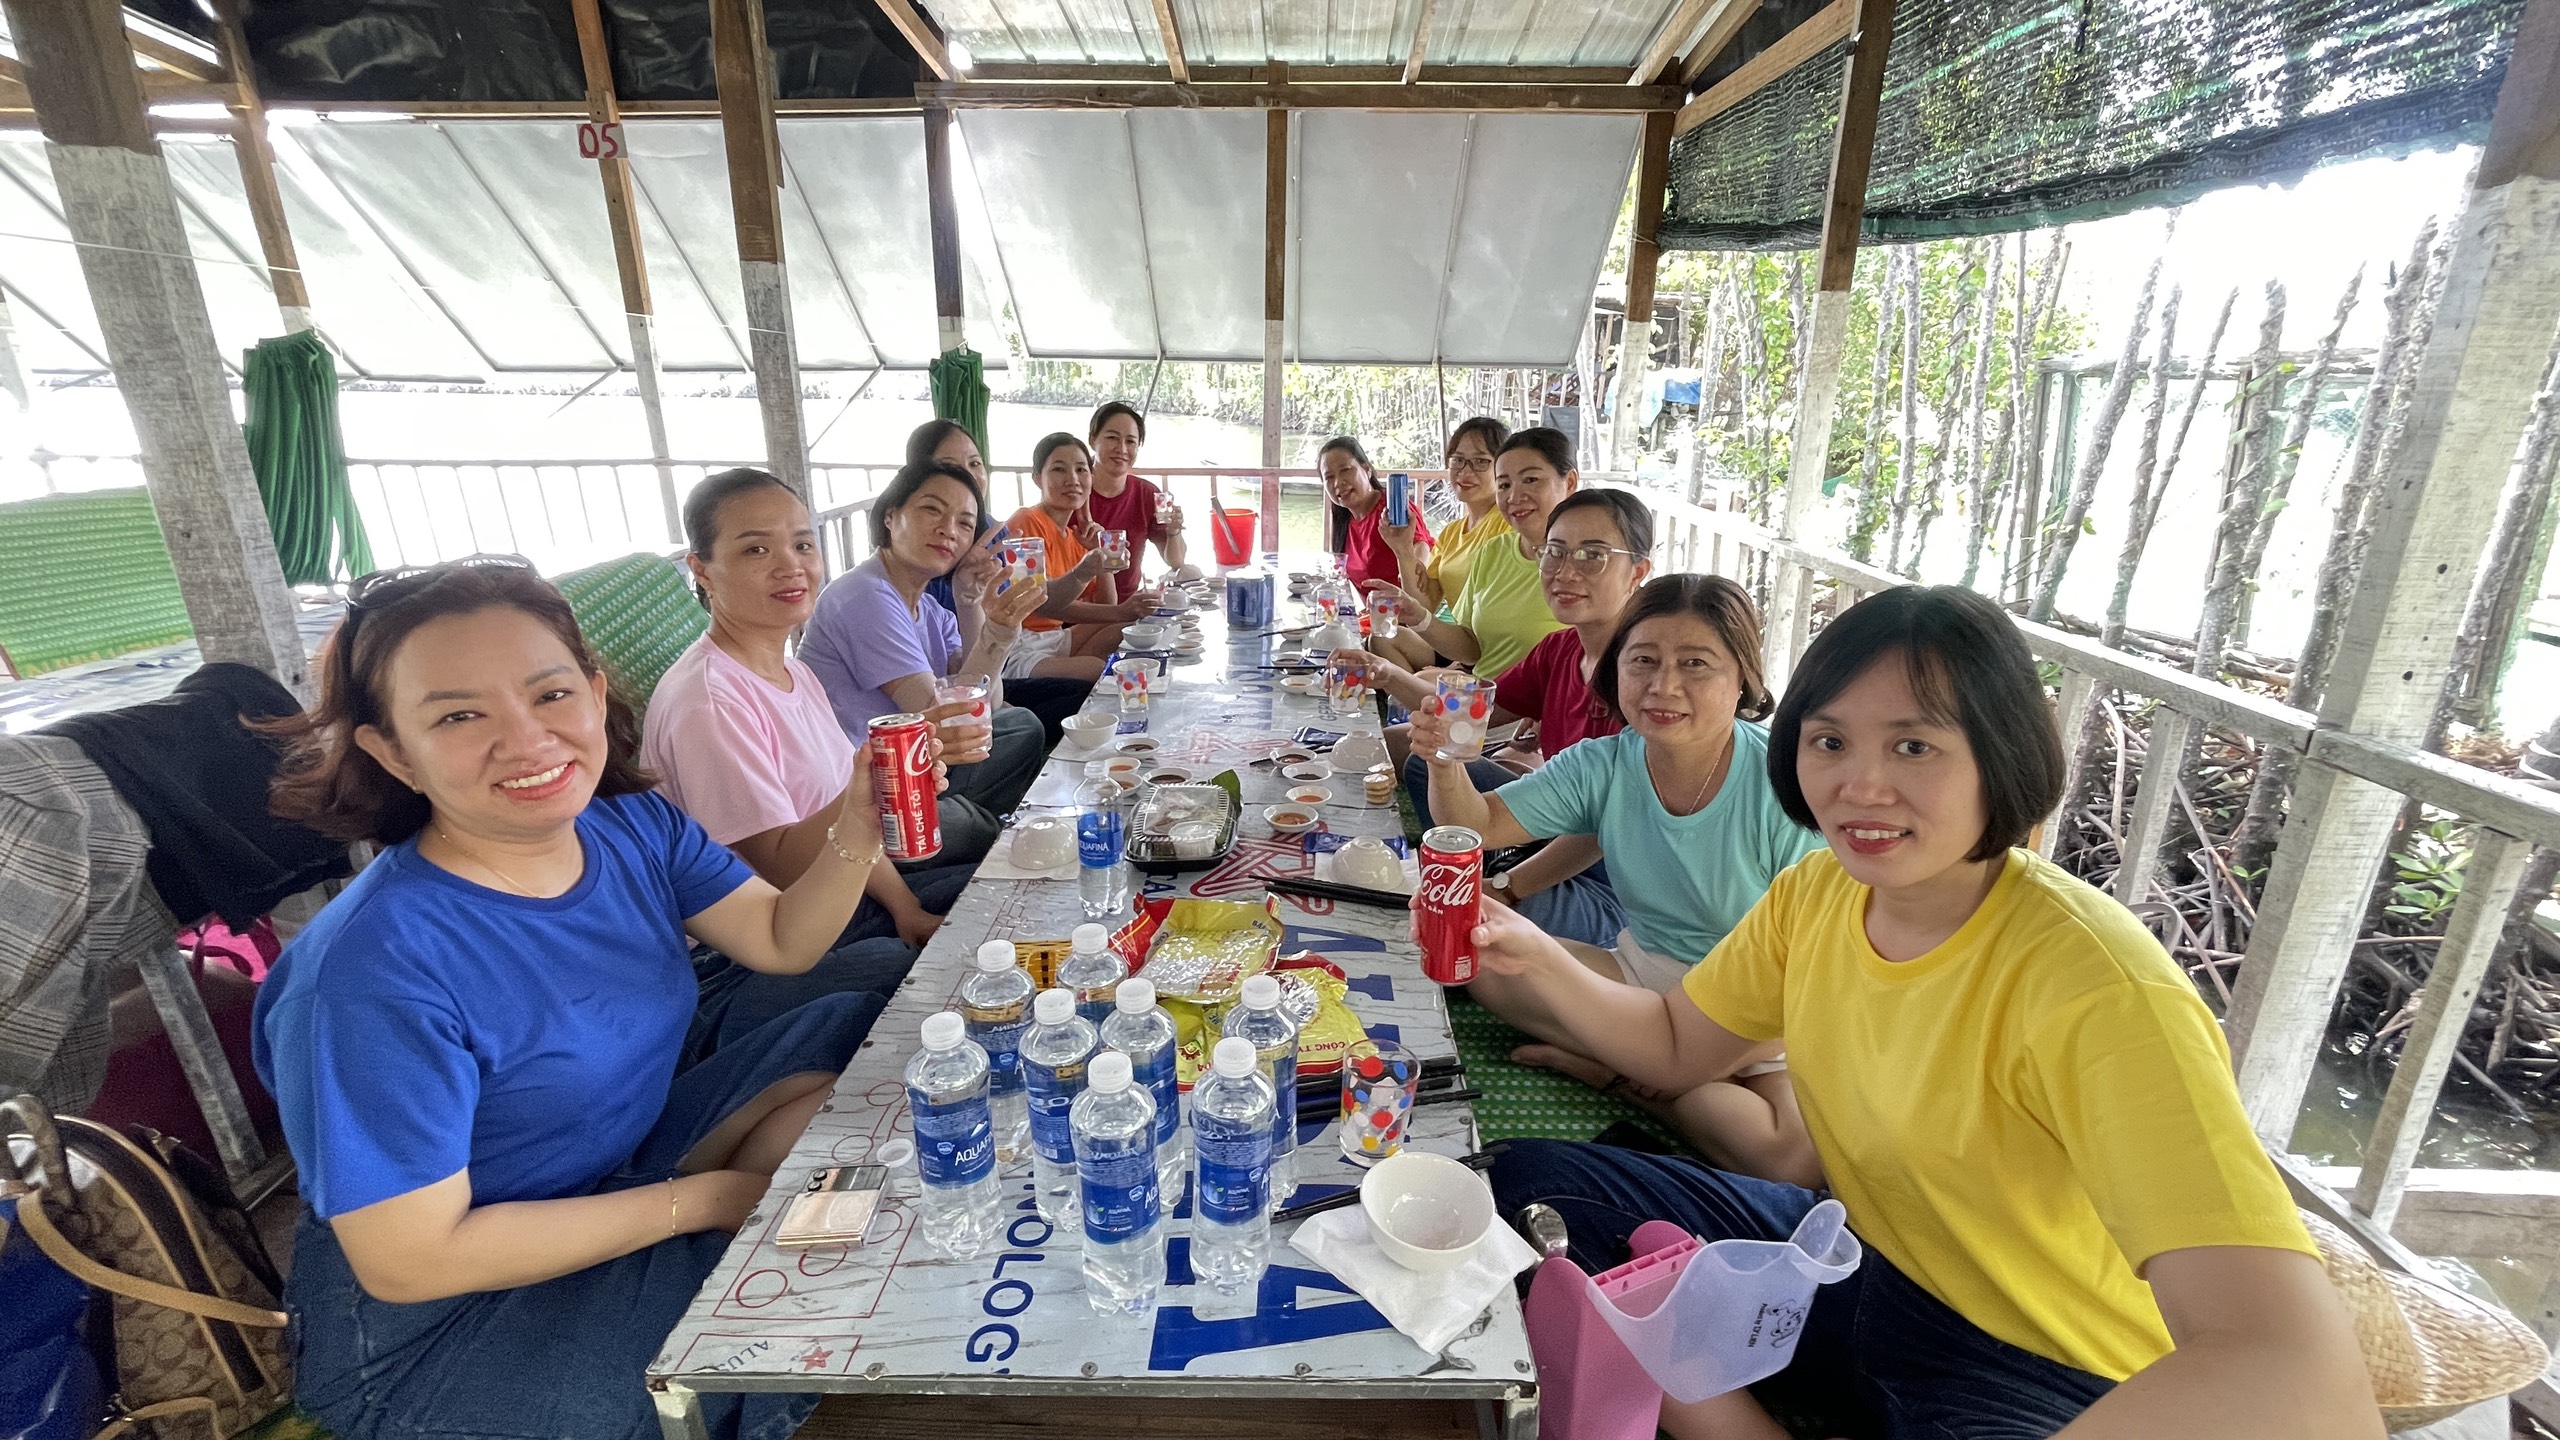 Tour Quy Nhơn – Phú Yên 3 Ngày 2 Đêm: Tây Sơn – Cồn Chim – City Food Tour Quy Nhơn